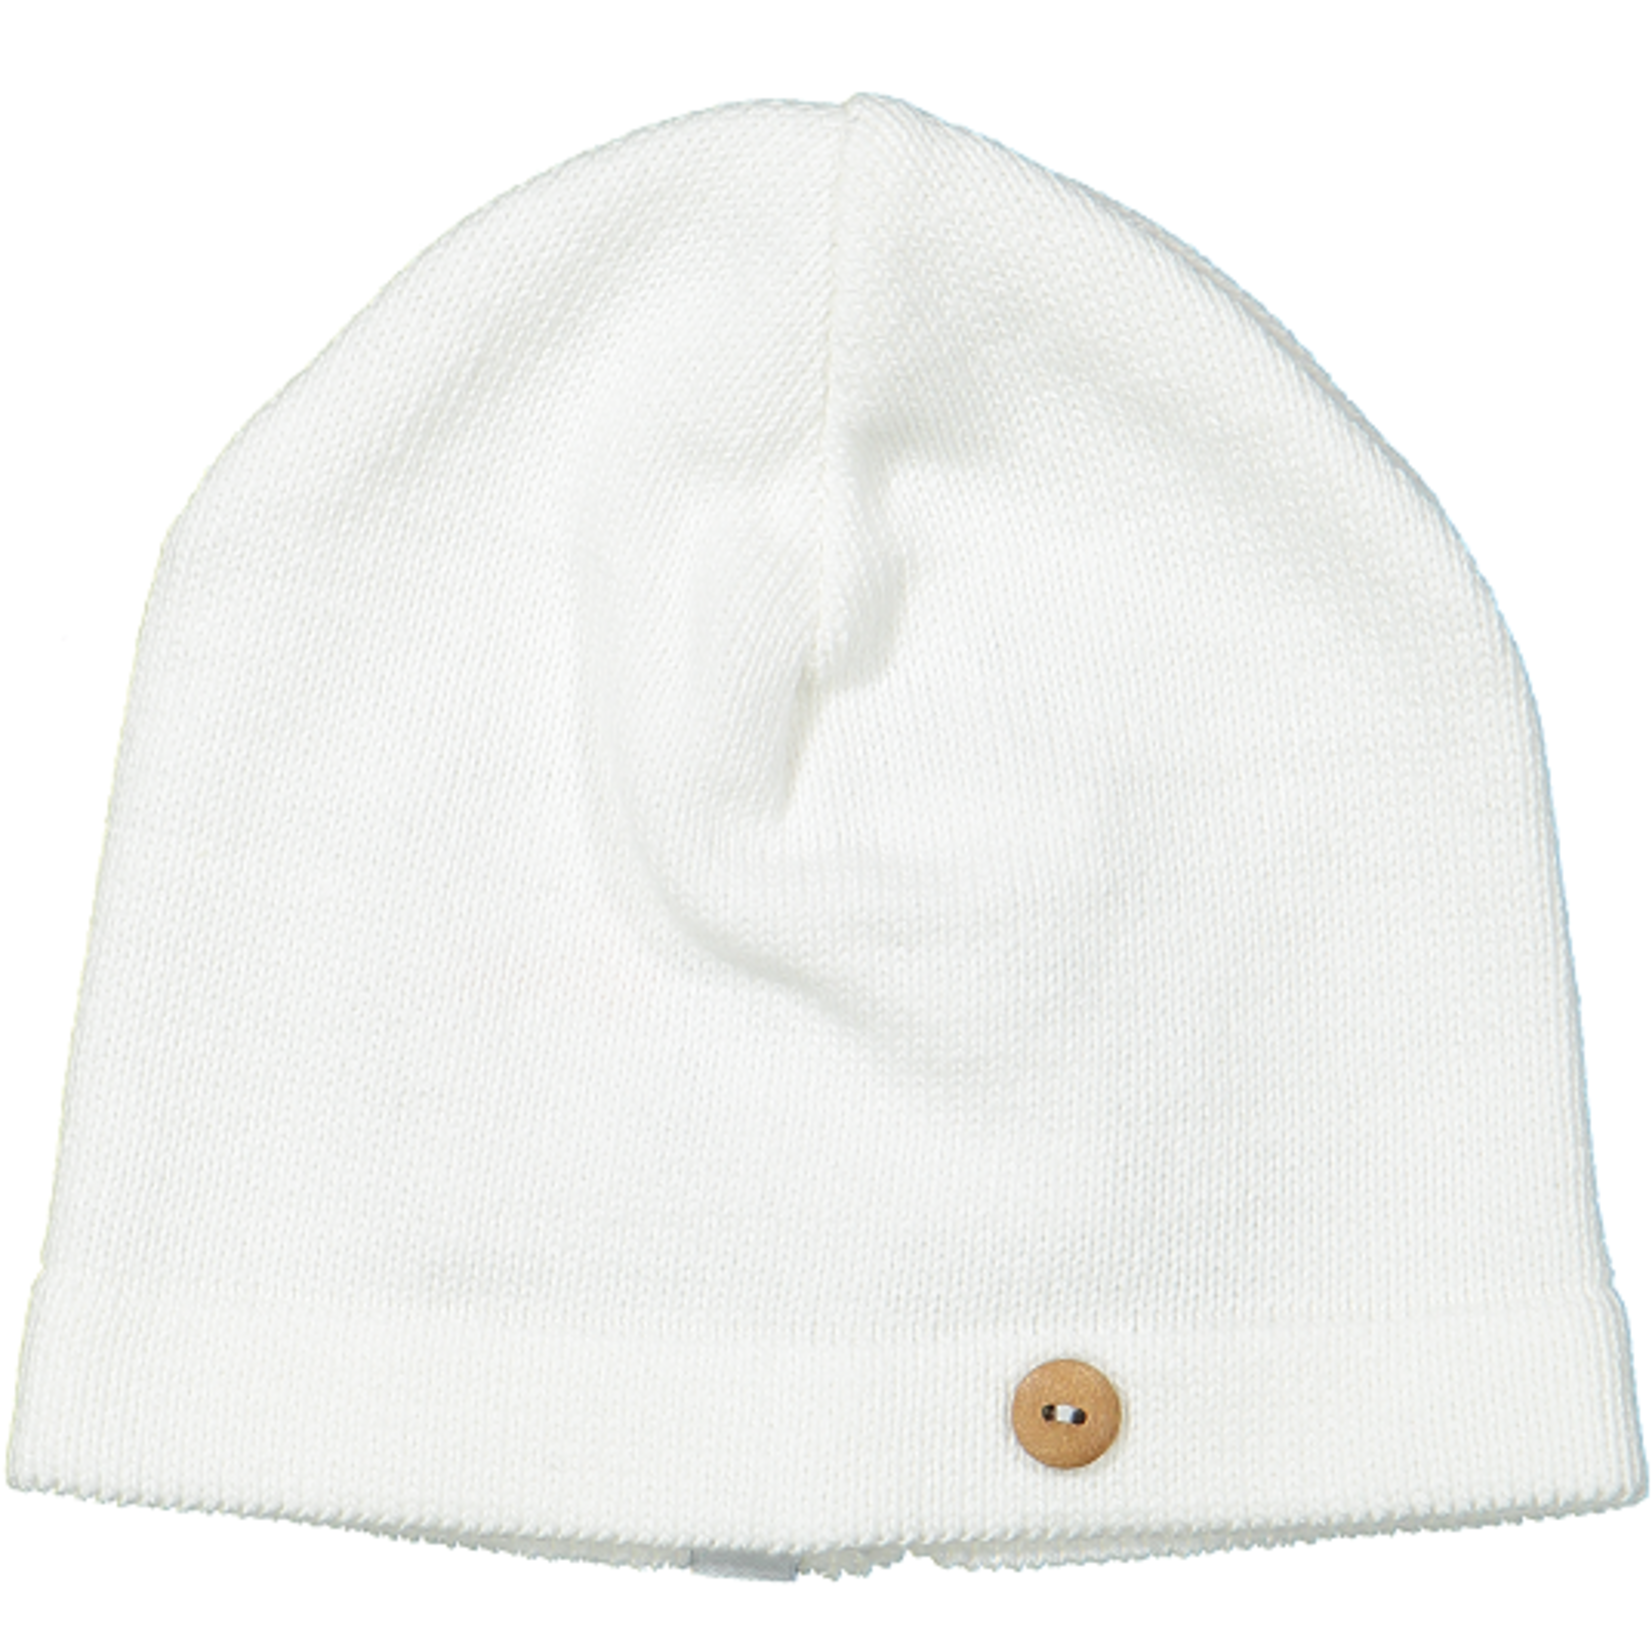 Klein Baby Hat natural white